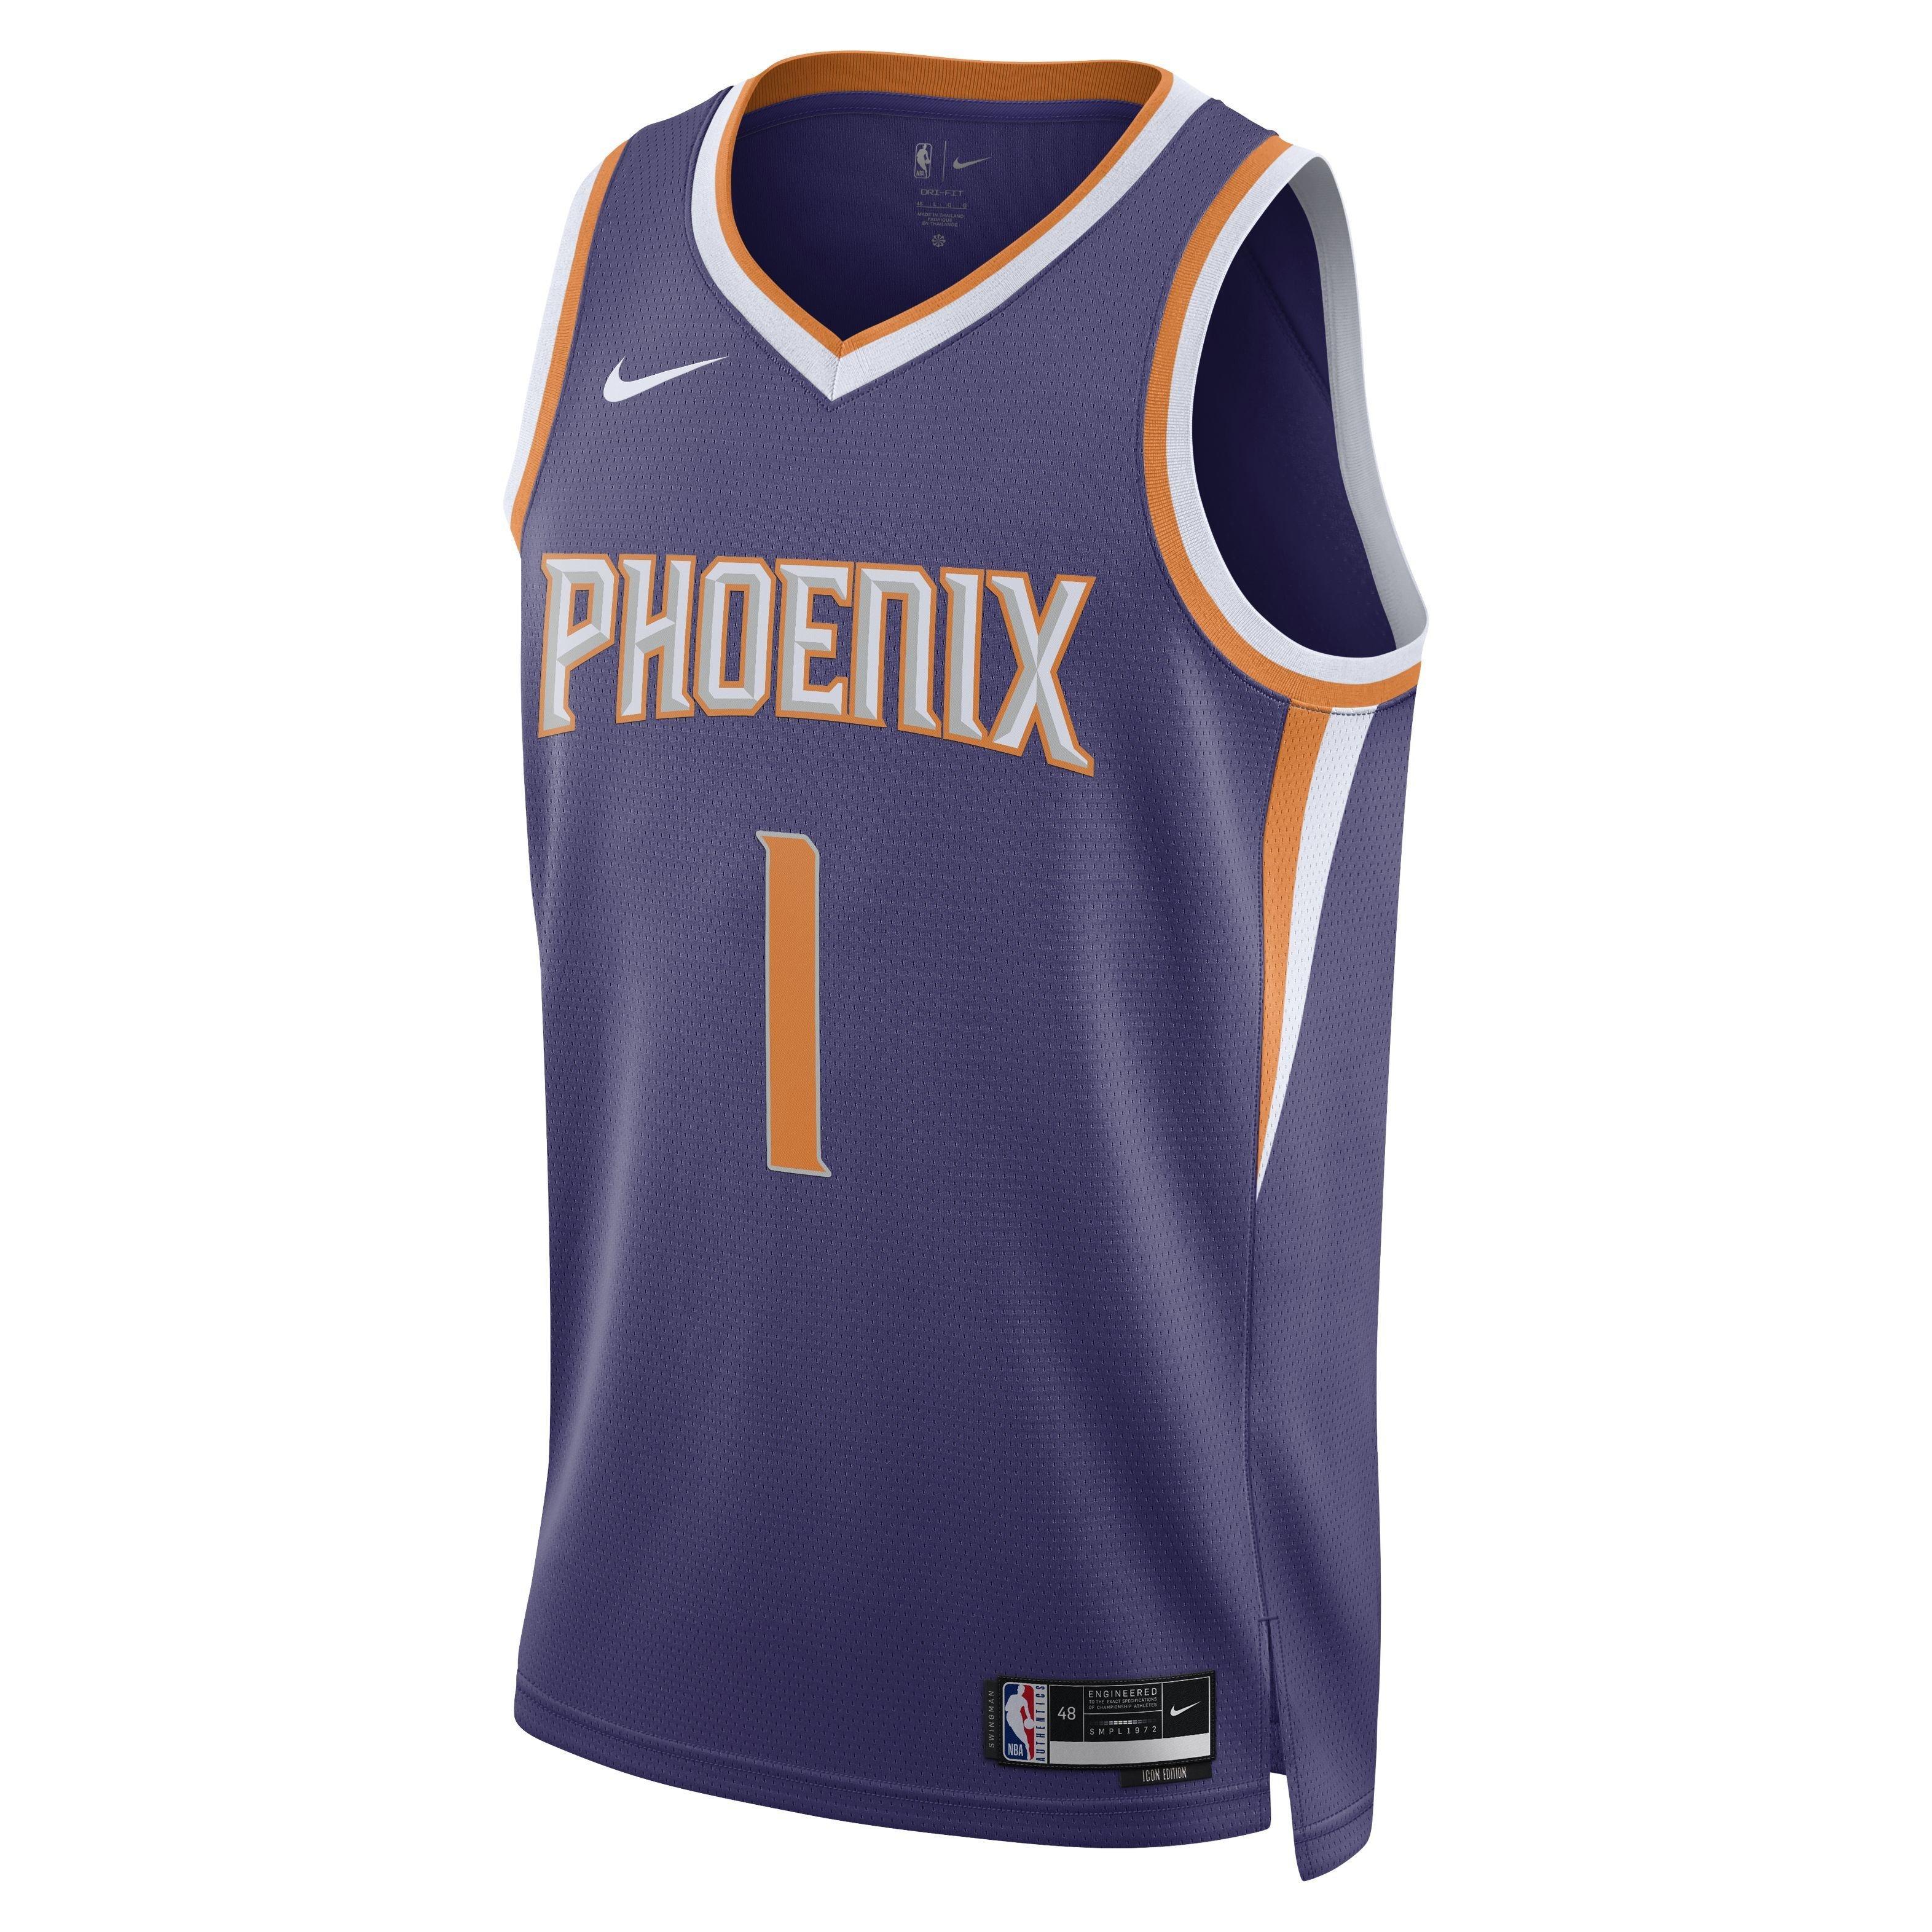 Wear favorite Suns jersey Dec. 22 on 'NBA Jersey Day' to open 2020-21 season